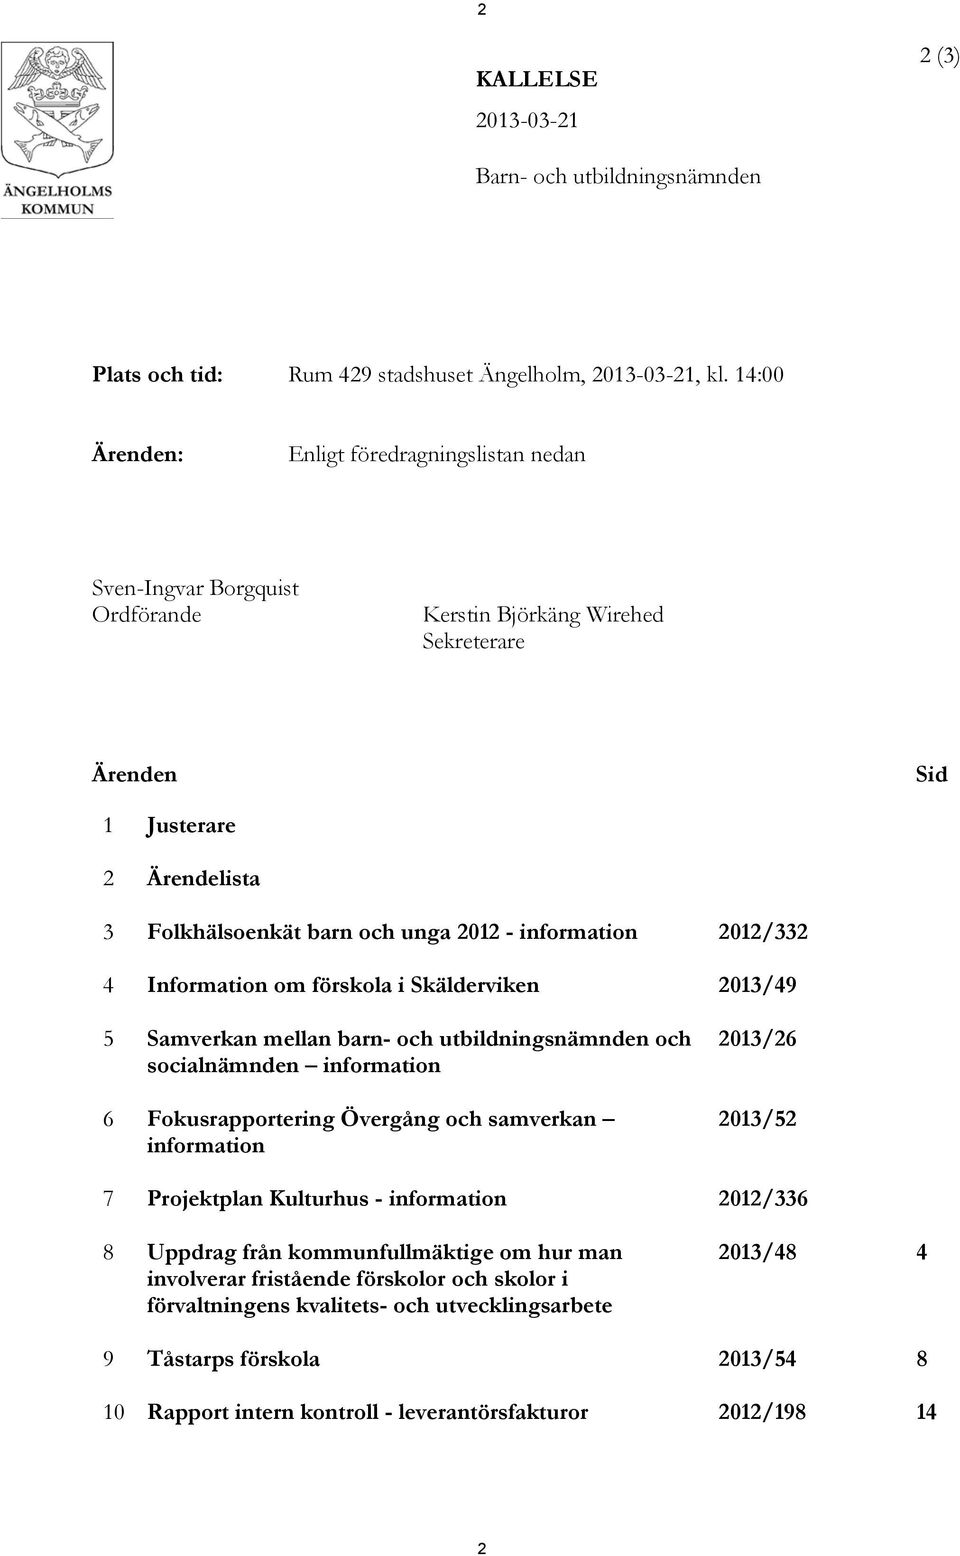 information 2012/332 4 Information om förskola i Skälderviken 2013/49 5 Samverkan mellan barn- och utbildningsnämnden och socialnämnden information 6 Fokusrapportering Övergång och samverkan